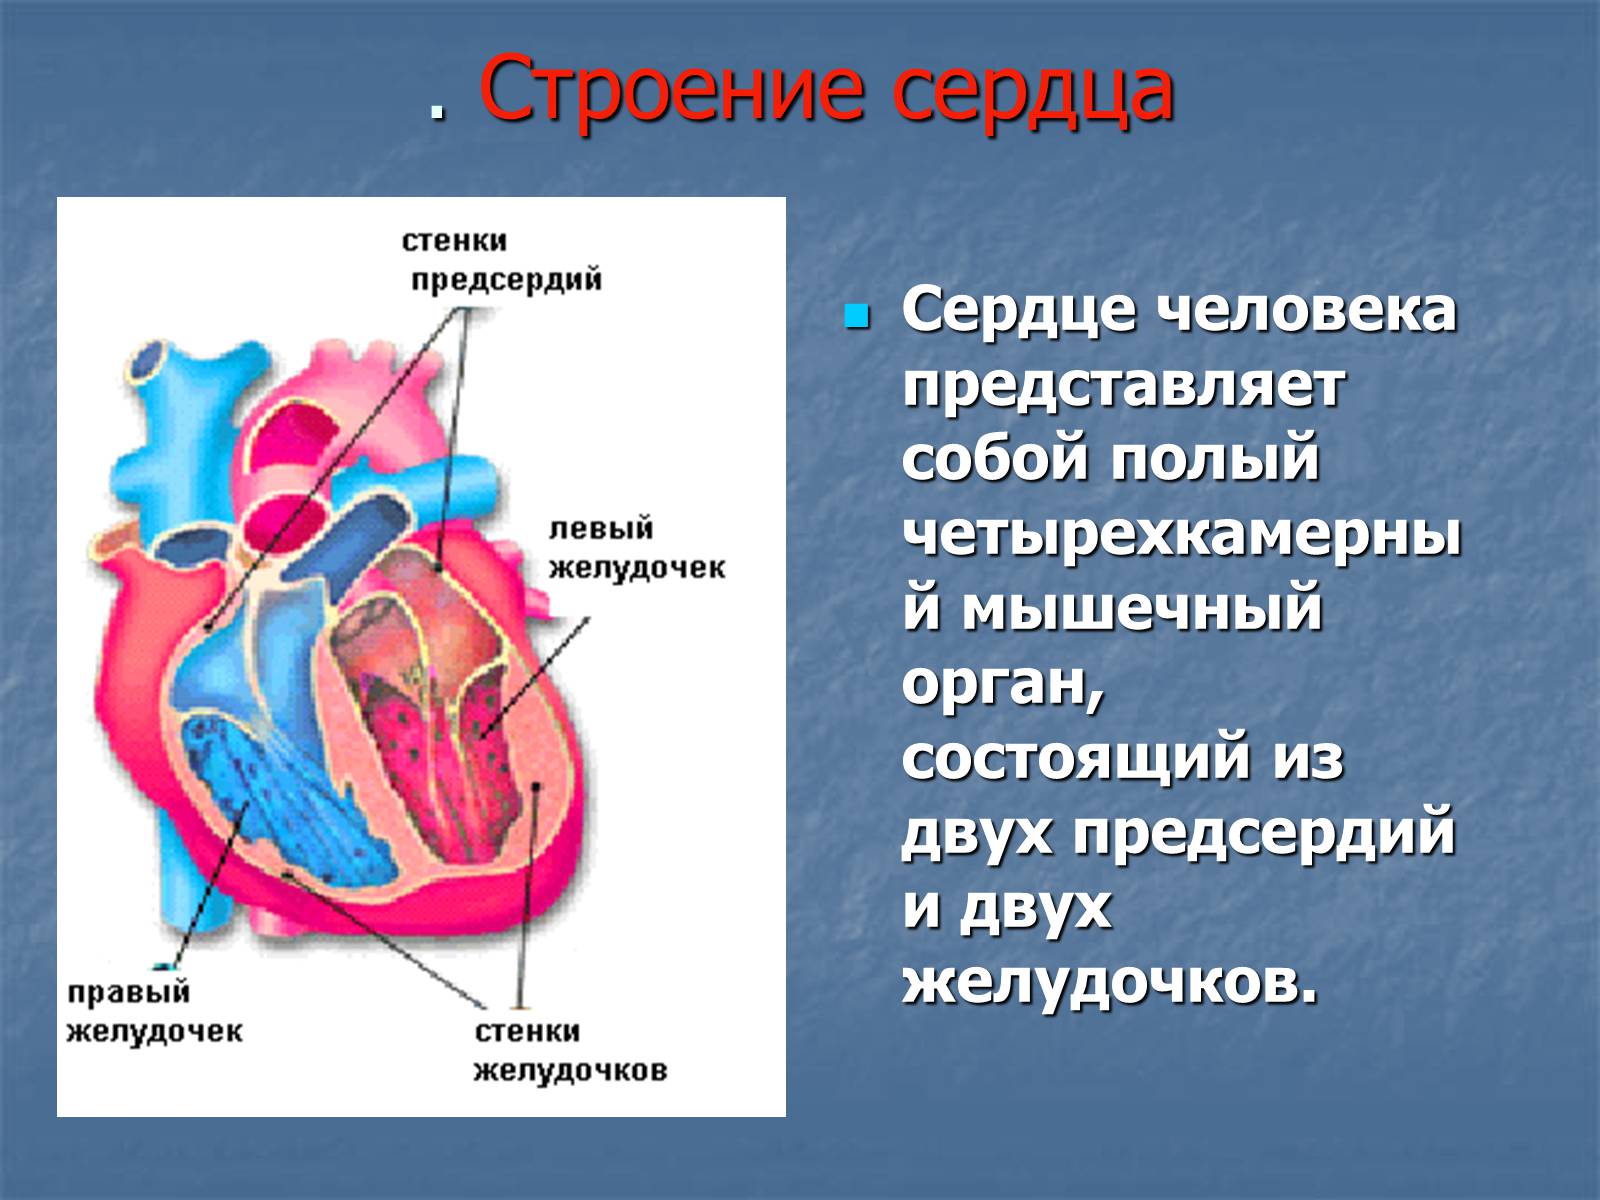 Строение левого предсердия. Строение желудочков сердца анатомия. 2 Желудочка и 2 предсердия. Сердце анатомия желудочки и предсердия. Строение сердца человека желудочки и предсердия.